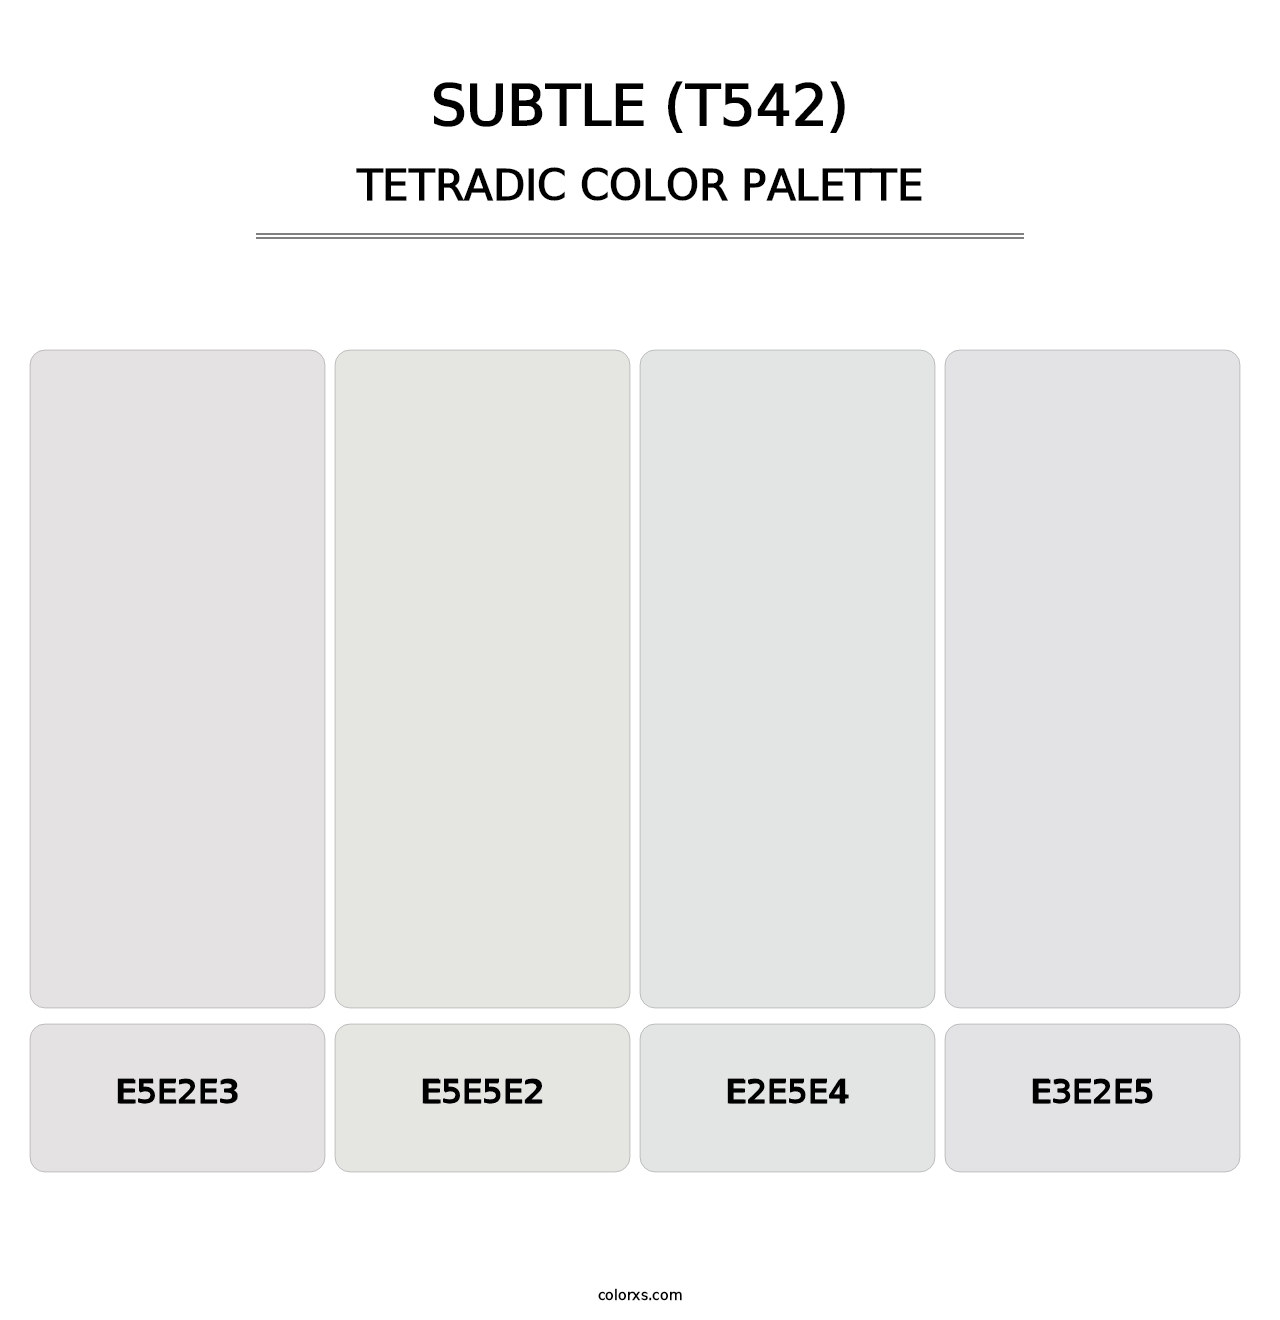 Subtle (T542) - Tetradic Color Palette